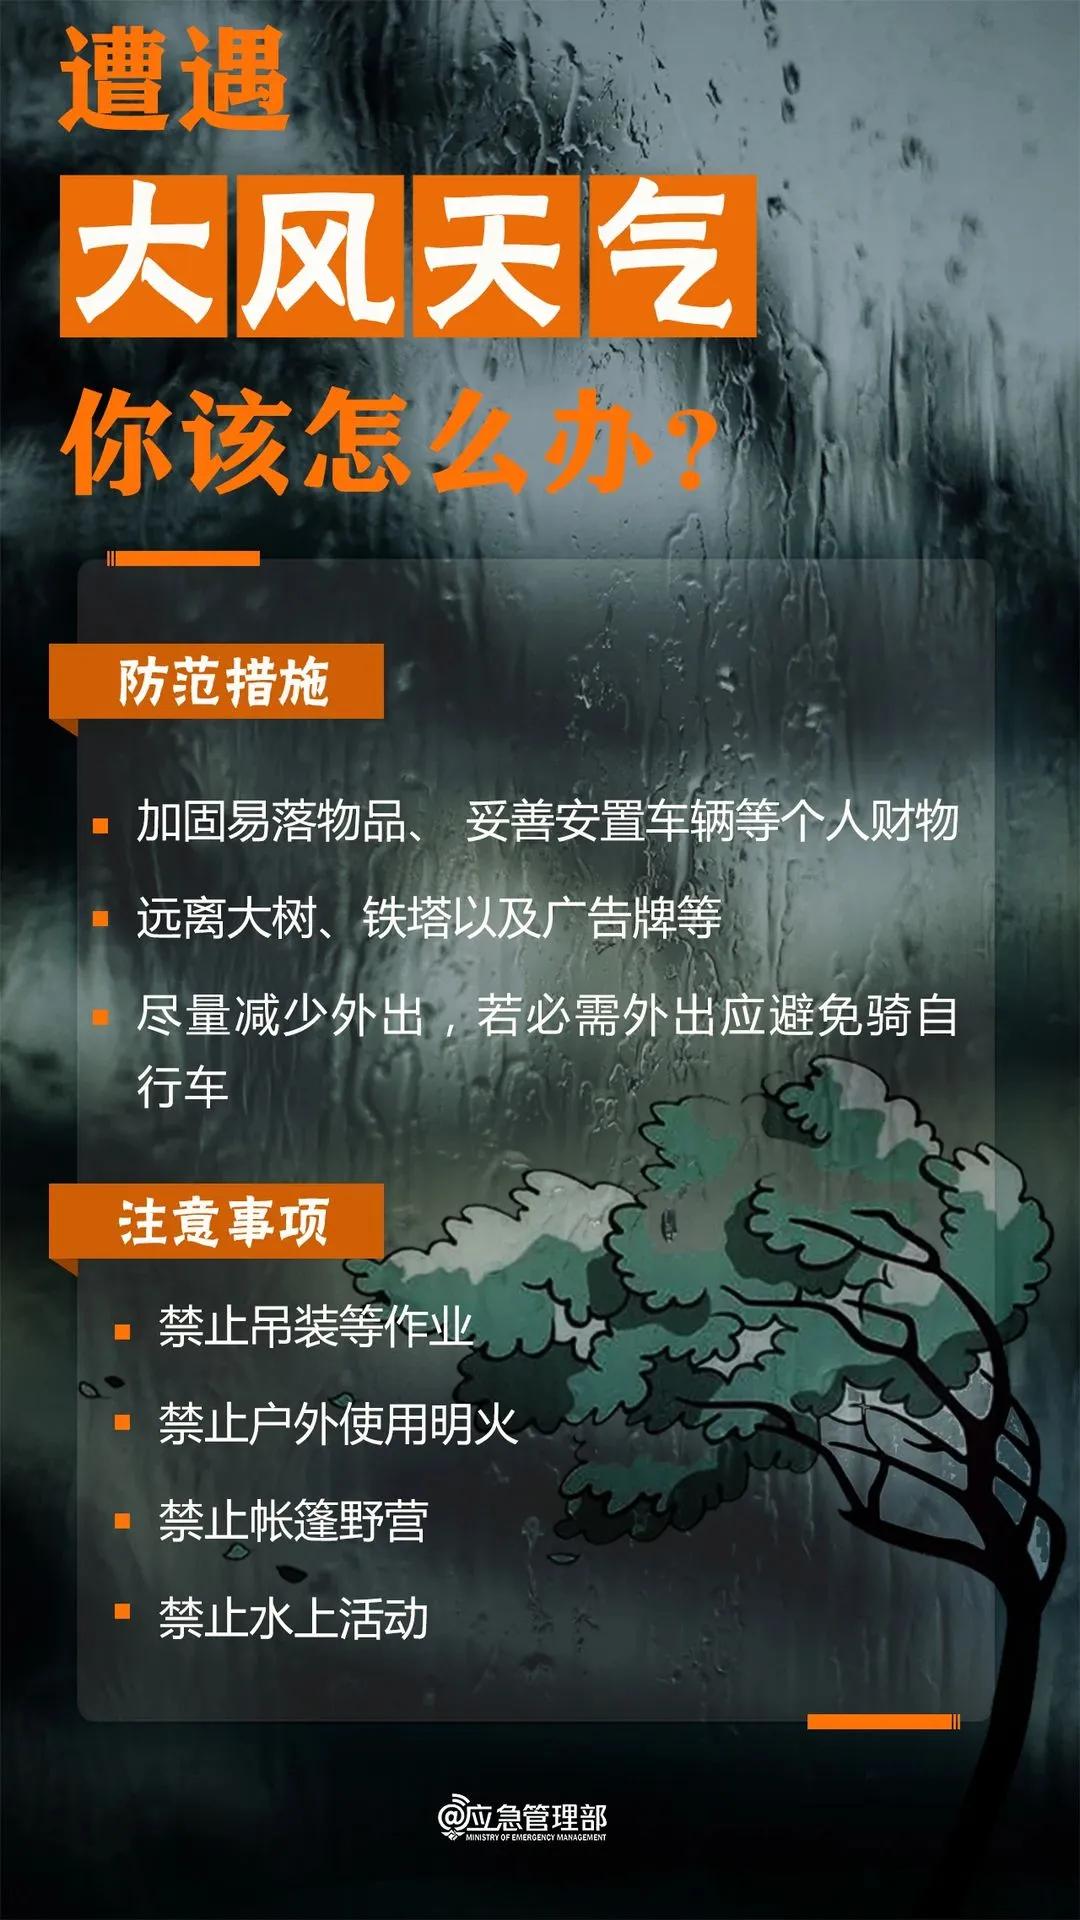 来源：西安气象、陕西气象丨编辑：千树丨校对：王军望丨审核：马悦丨转载请注明出处